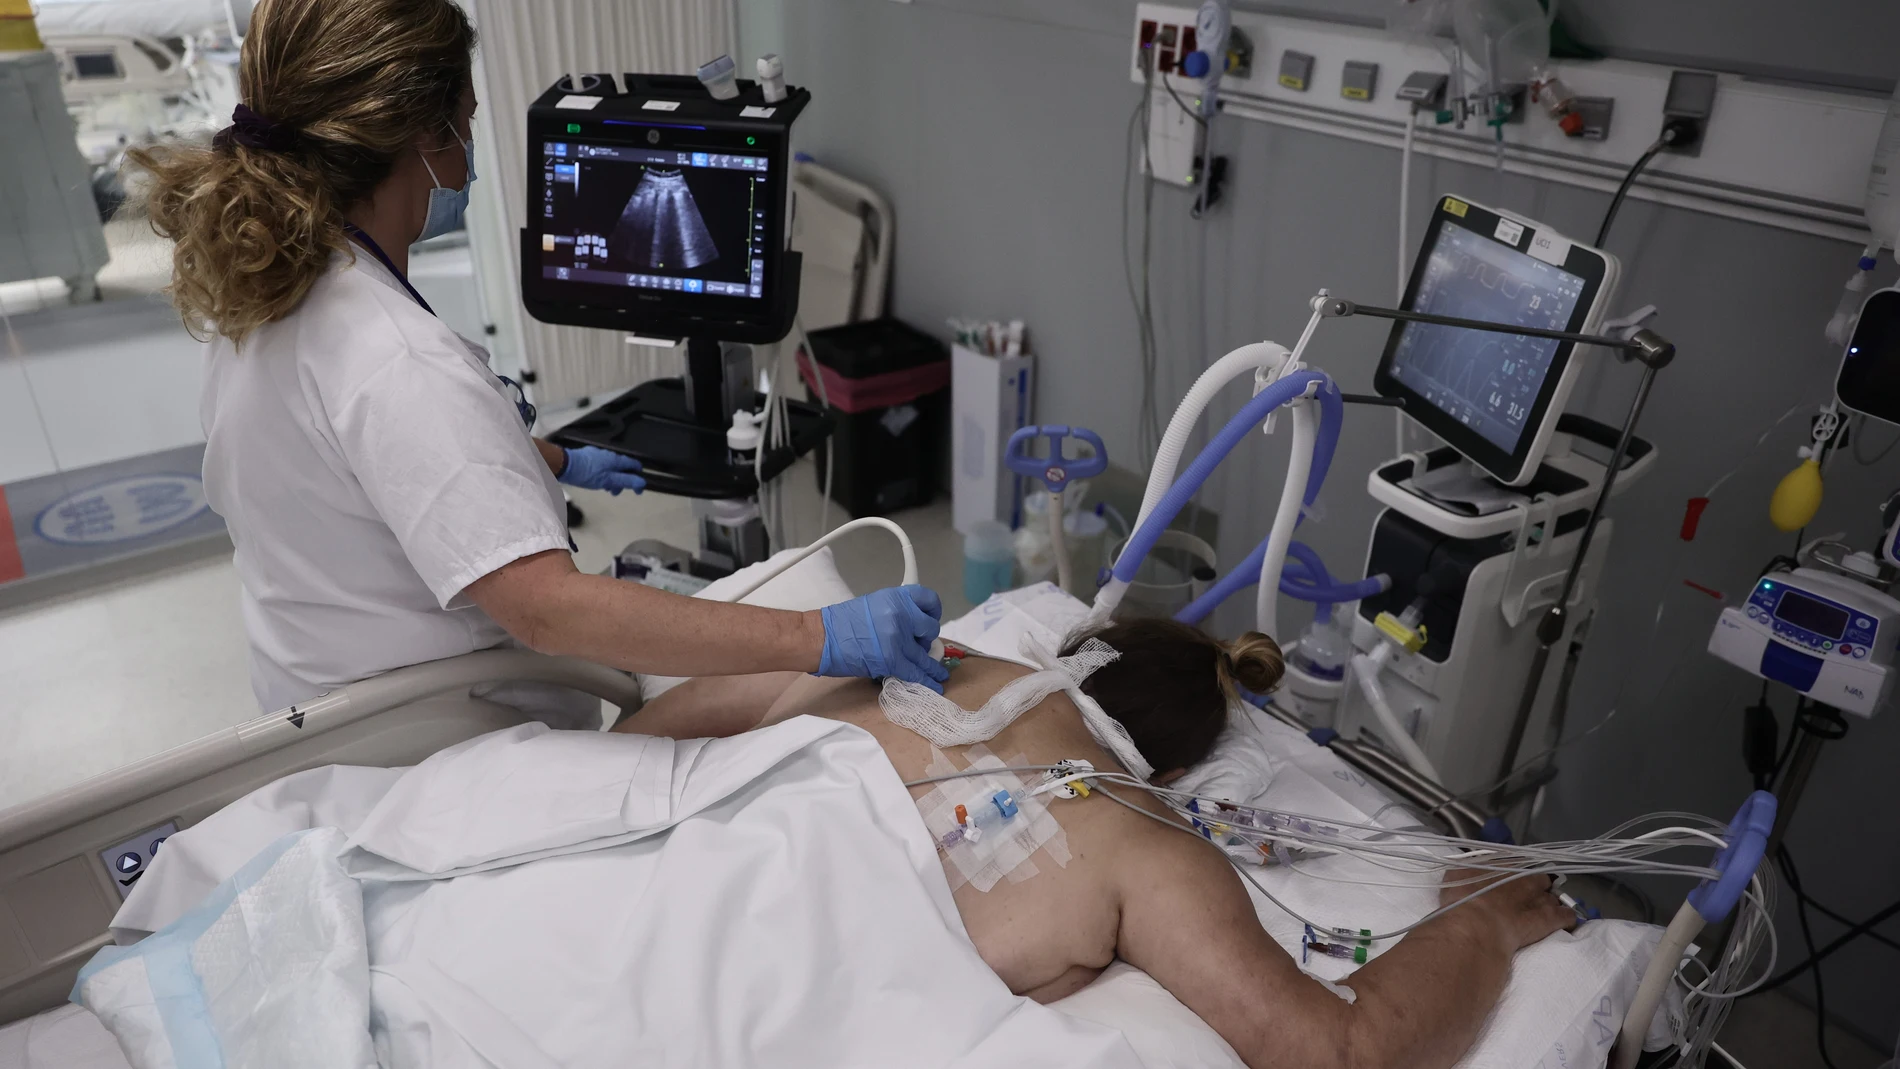 Una enfermera realiza una ecografía a una paciente en la UCI, en una imagen de archivo